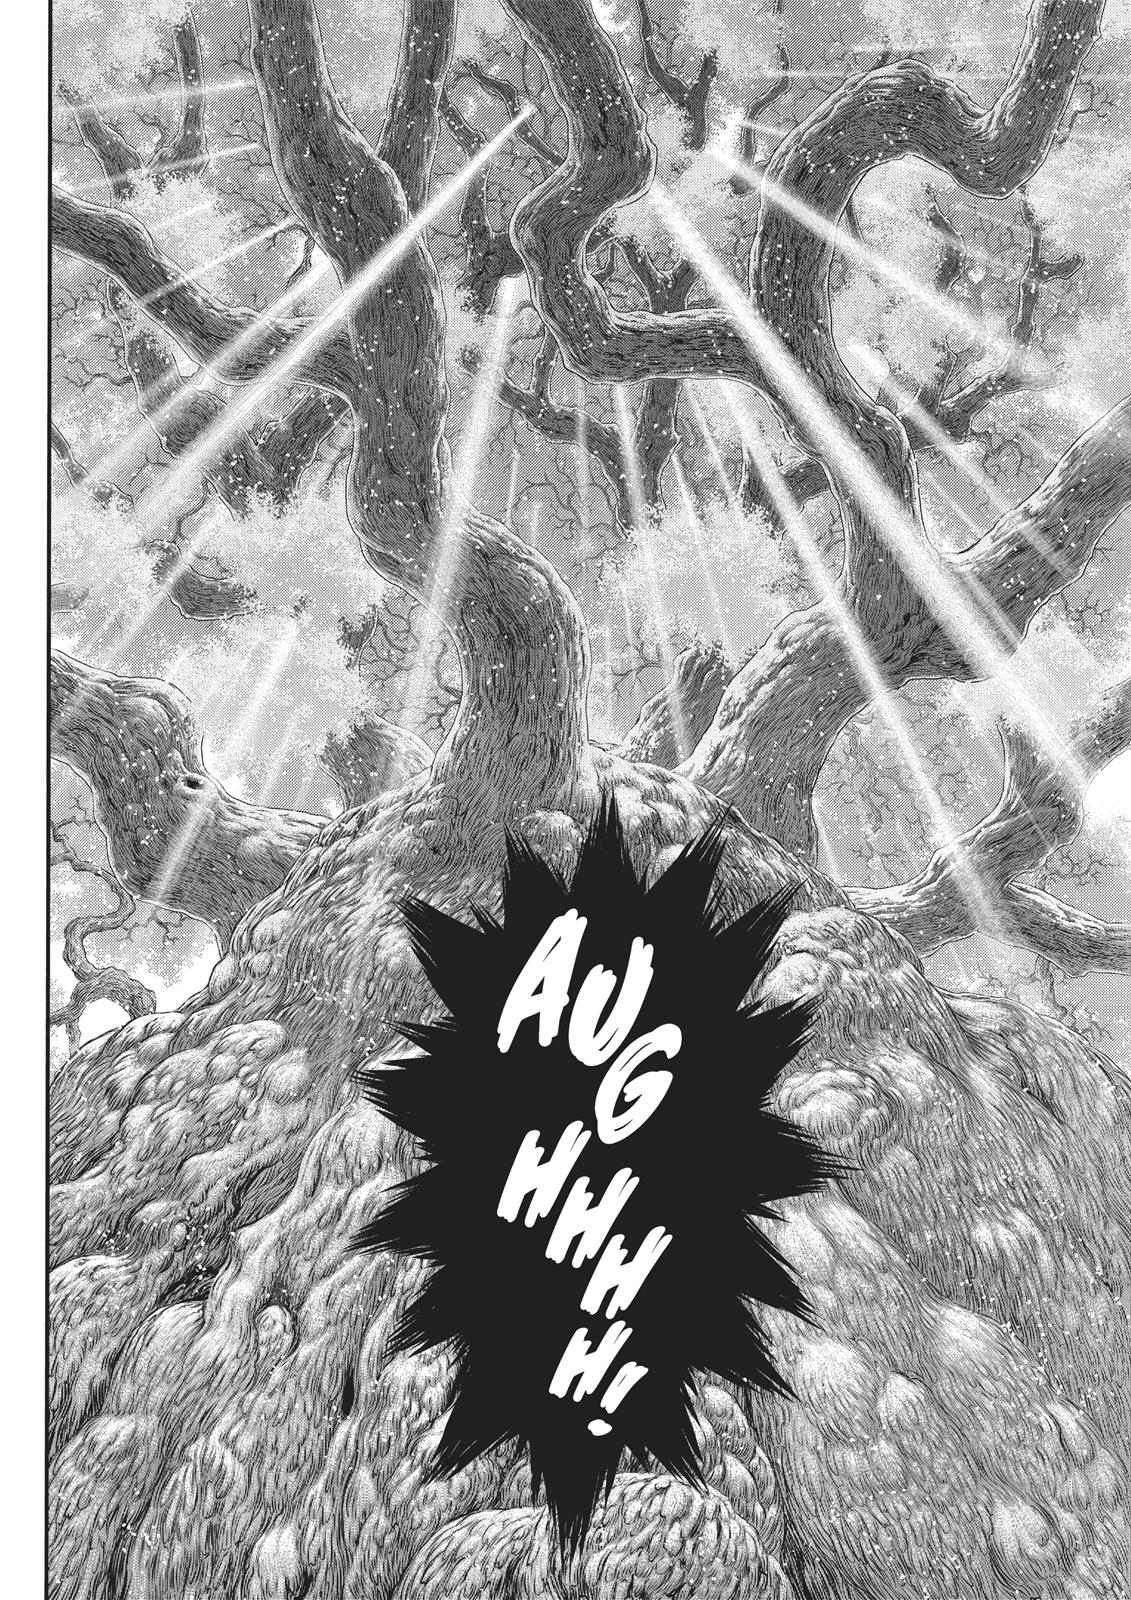 Berserk Manga Chapter 355 image 18